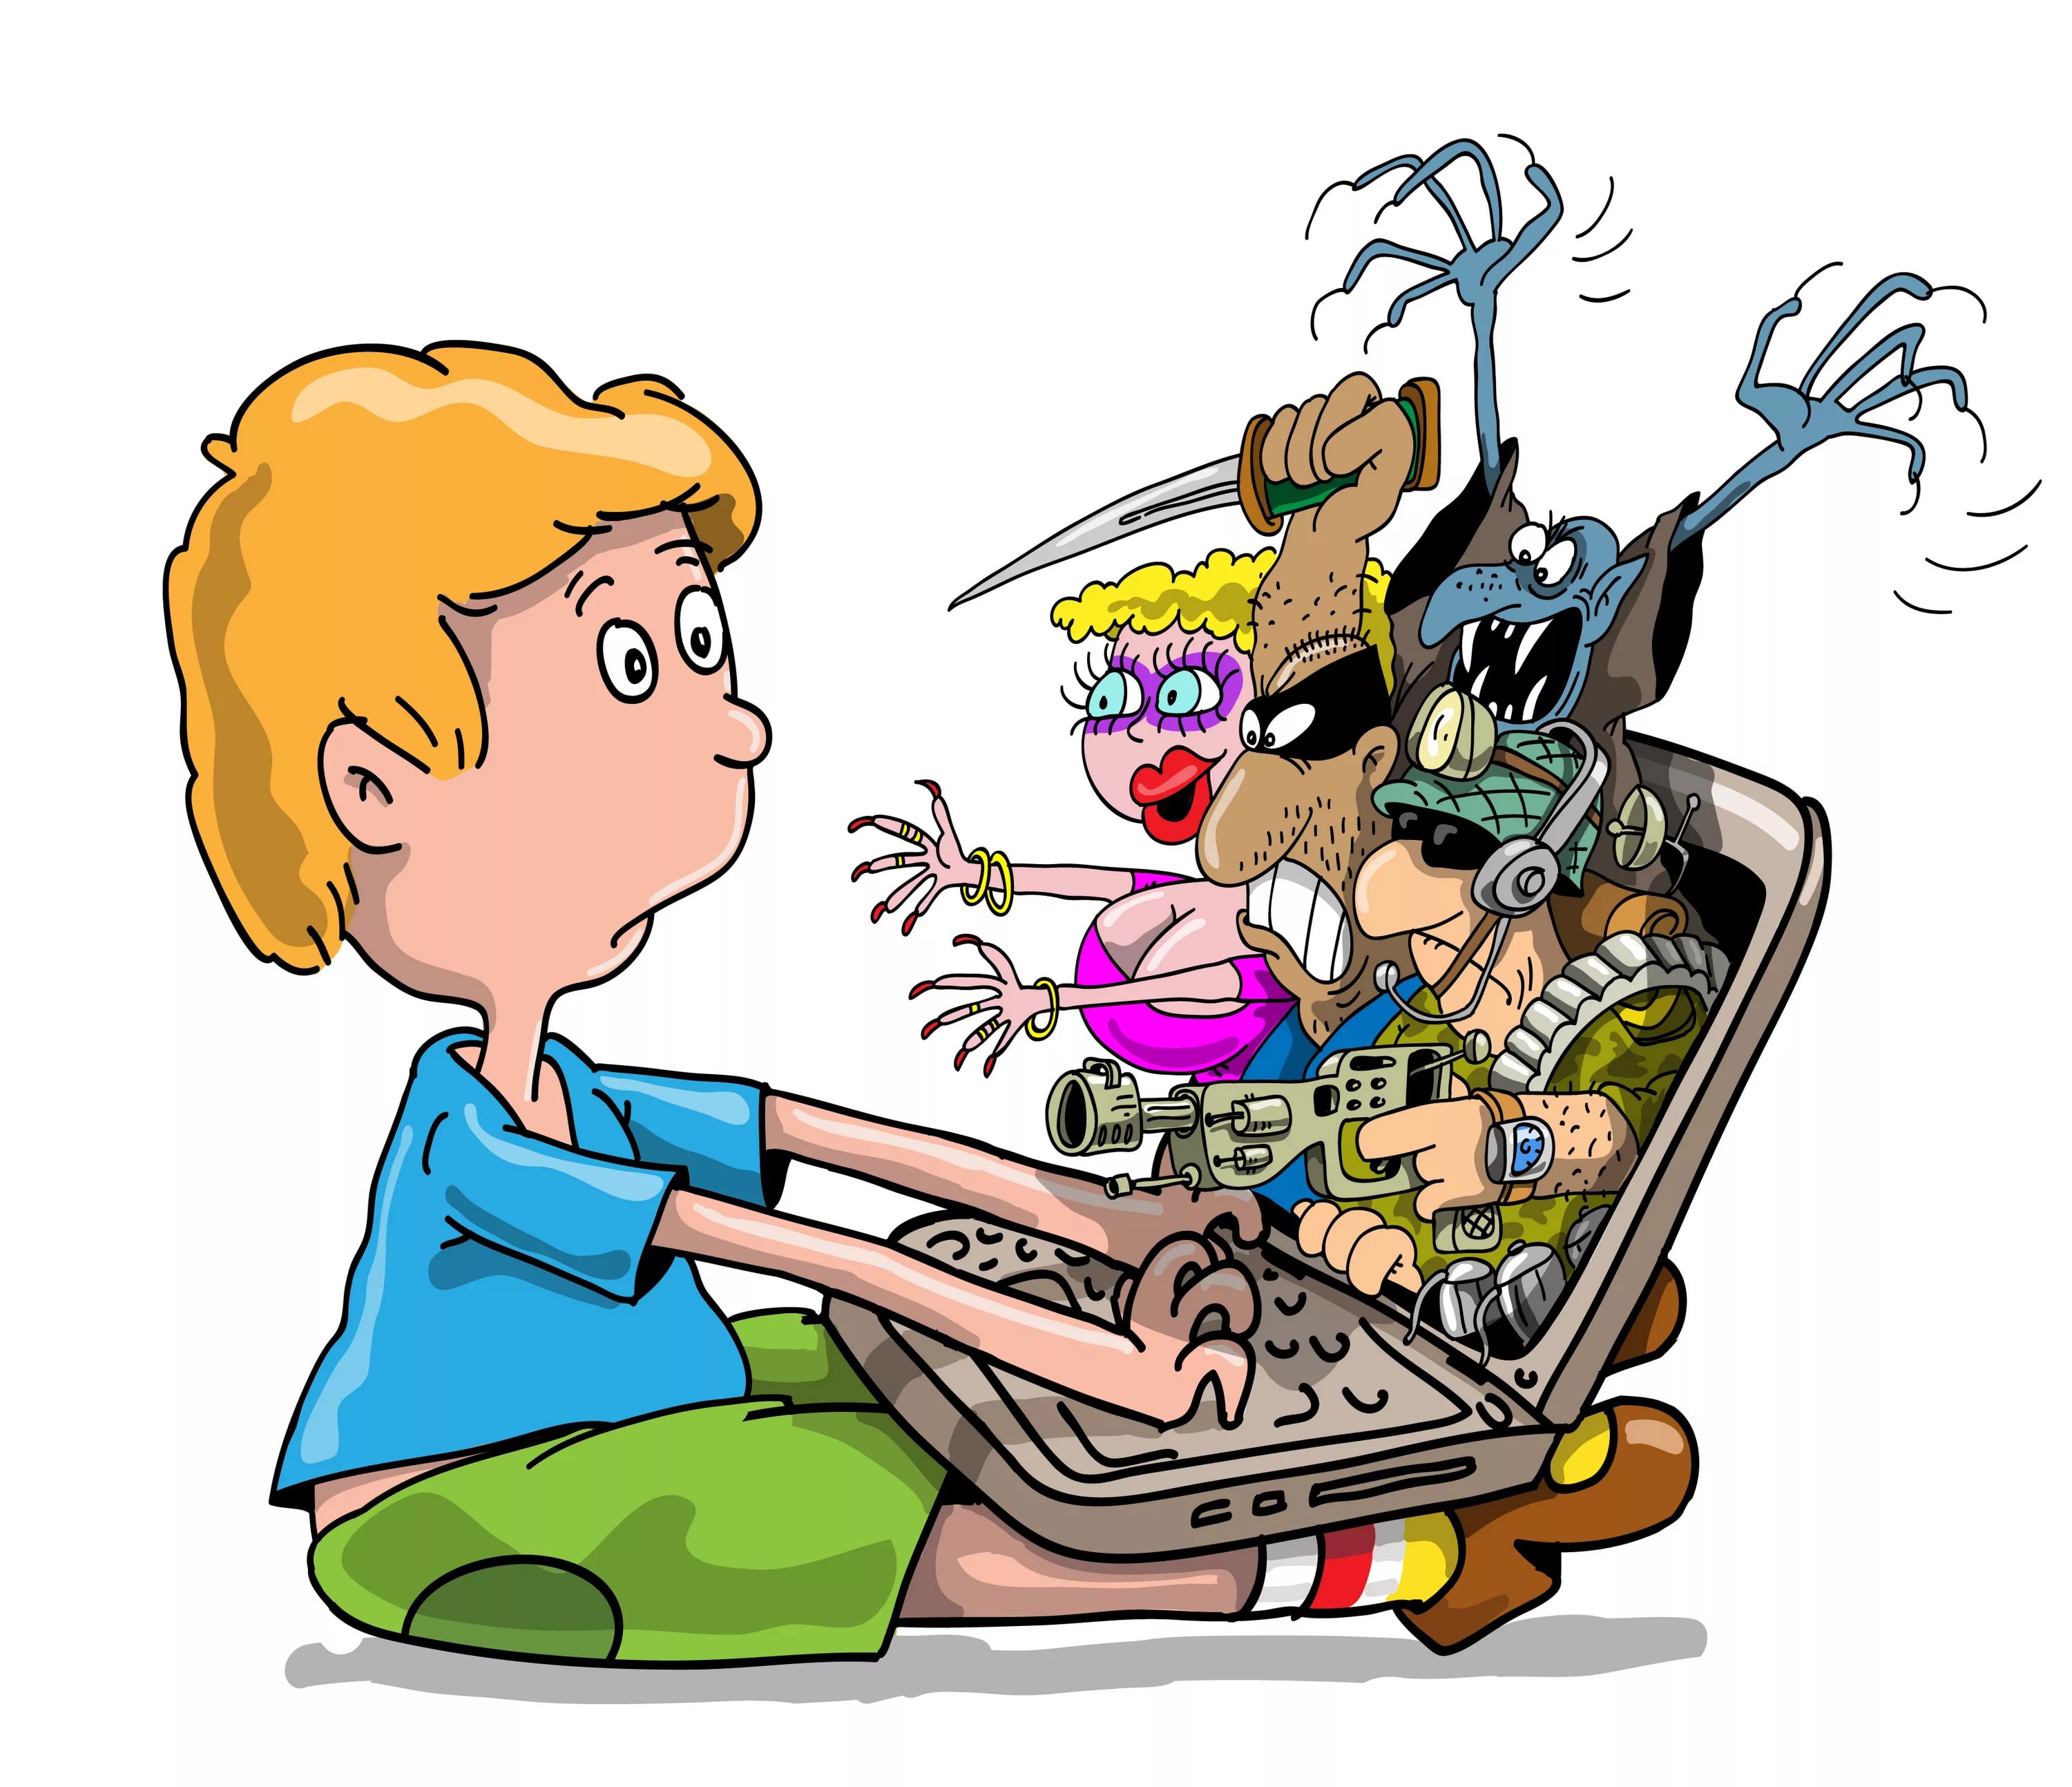 Боязнь незнакомых. Дети компьютер арт. Компьютер иллюстрация. Опасности в интернете для детей. Детям об интернете.